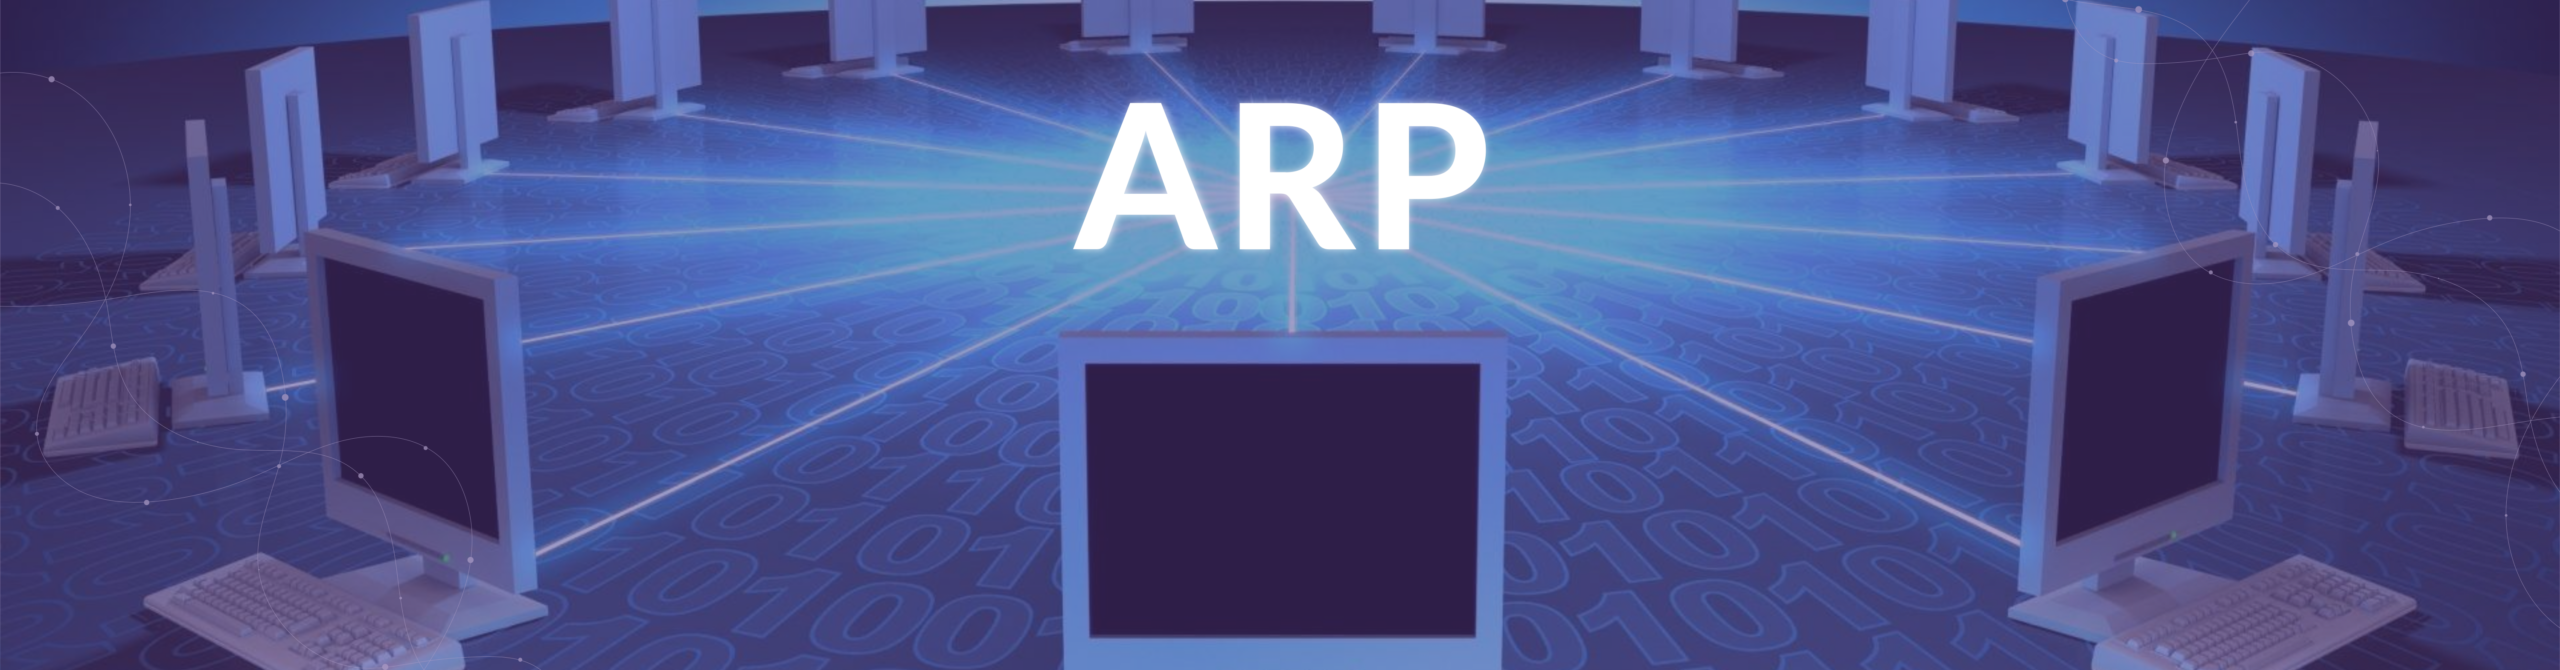 ARP timeout, por qué tenerlo configurado en 30 segundos o 4 horas hace una gran diferencia